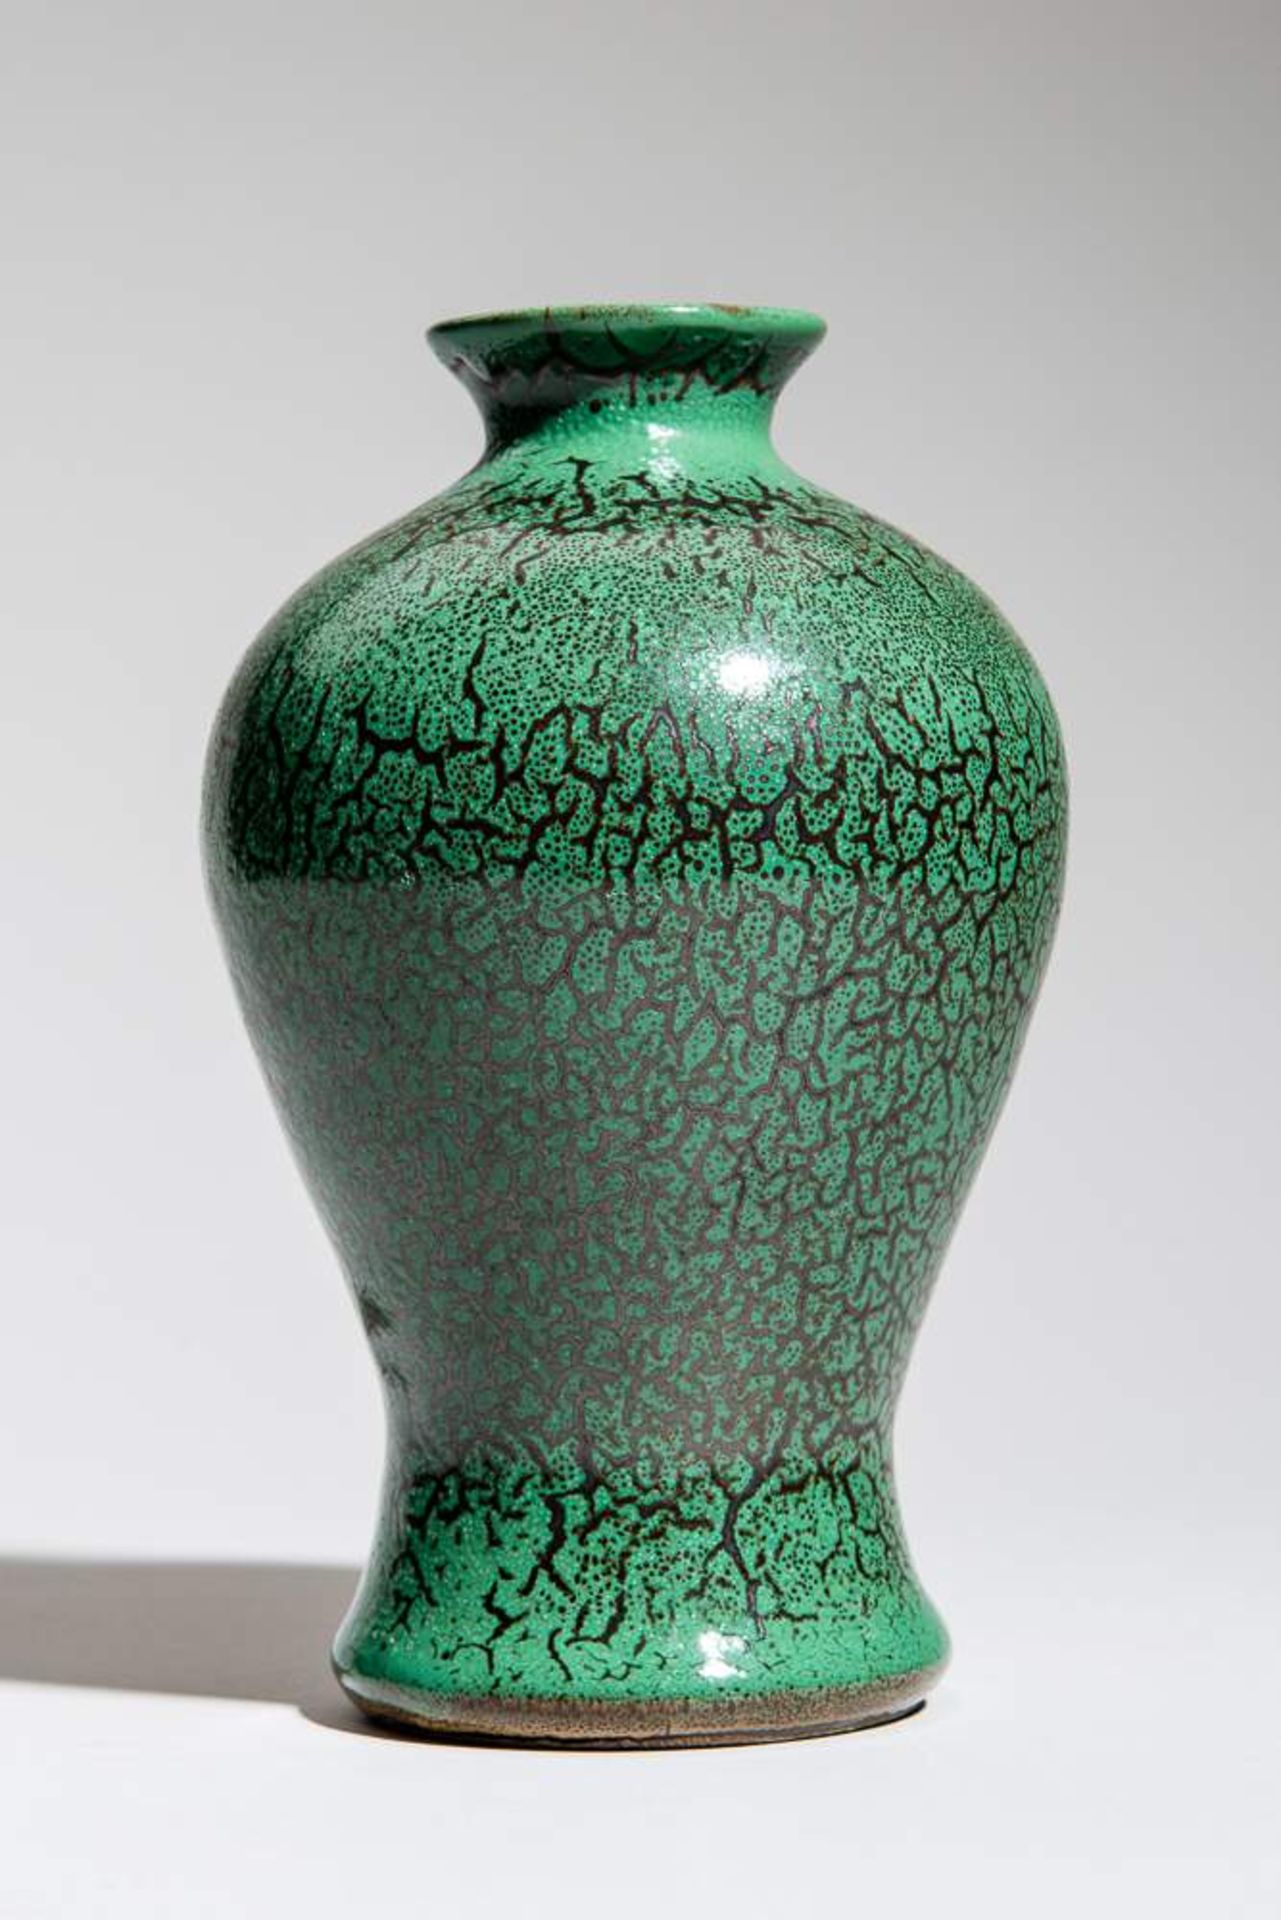 GRÜNE VASE MIT ASTWERK-DEKOR
Glasierte Keramik. China, Qing-Dynastie bis RepublikSeltenes kleines